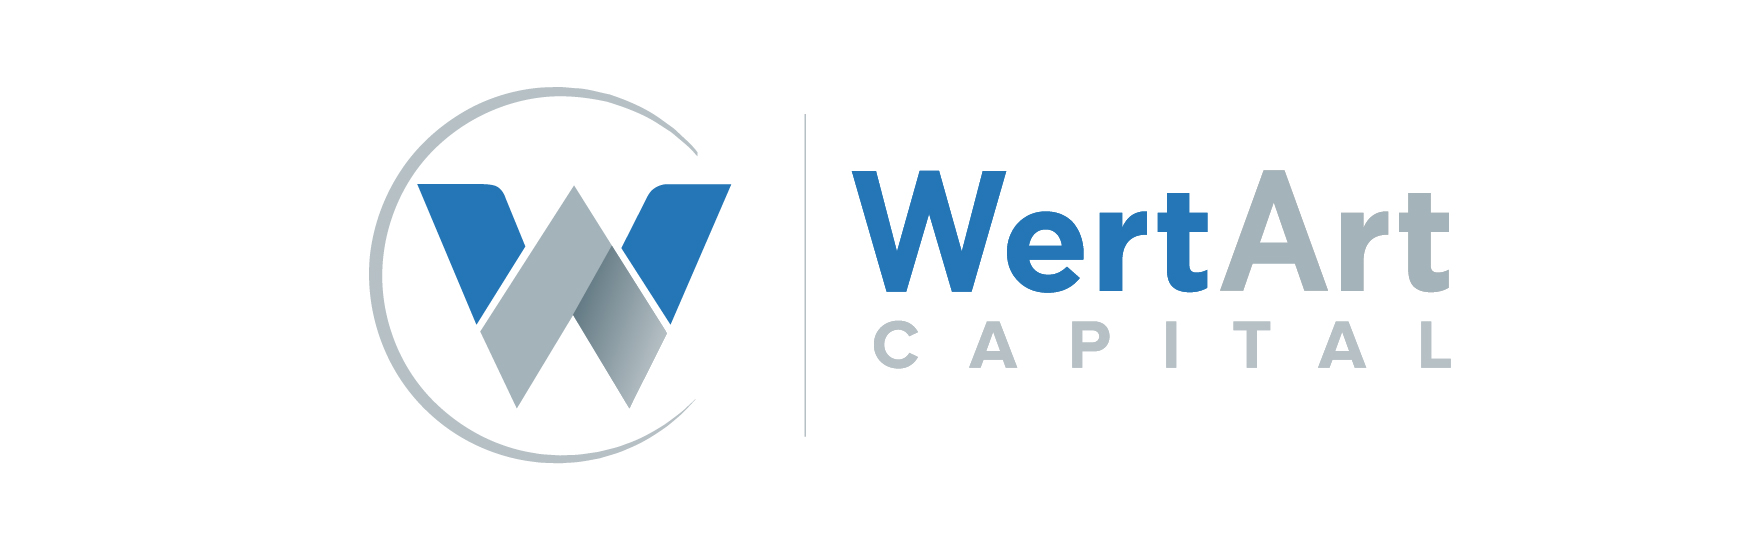 WertArt Capital